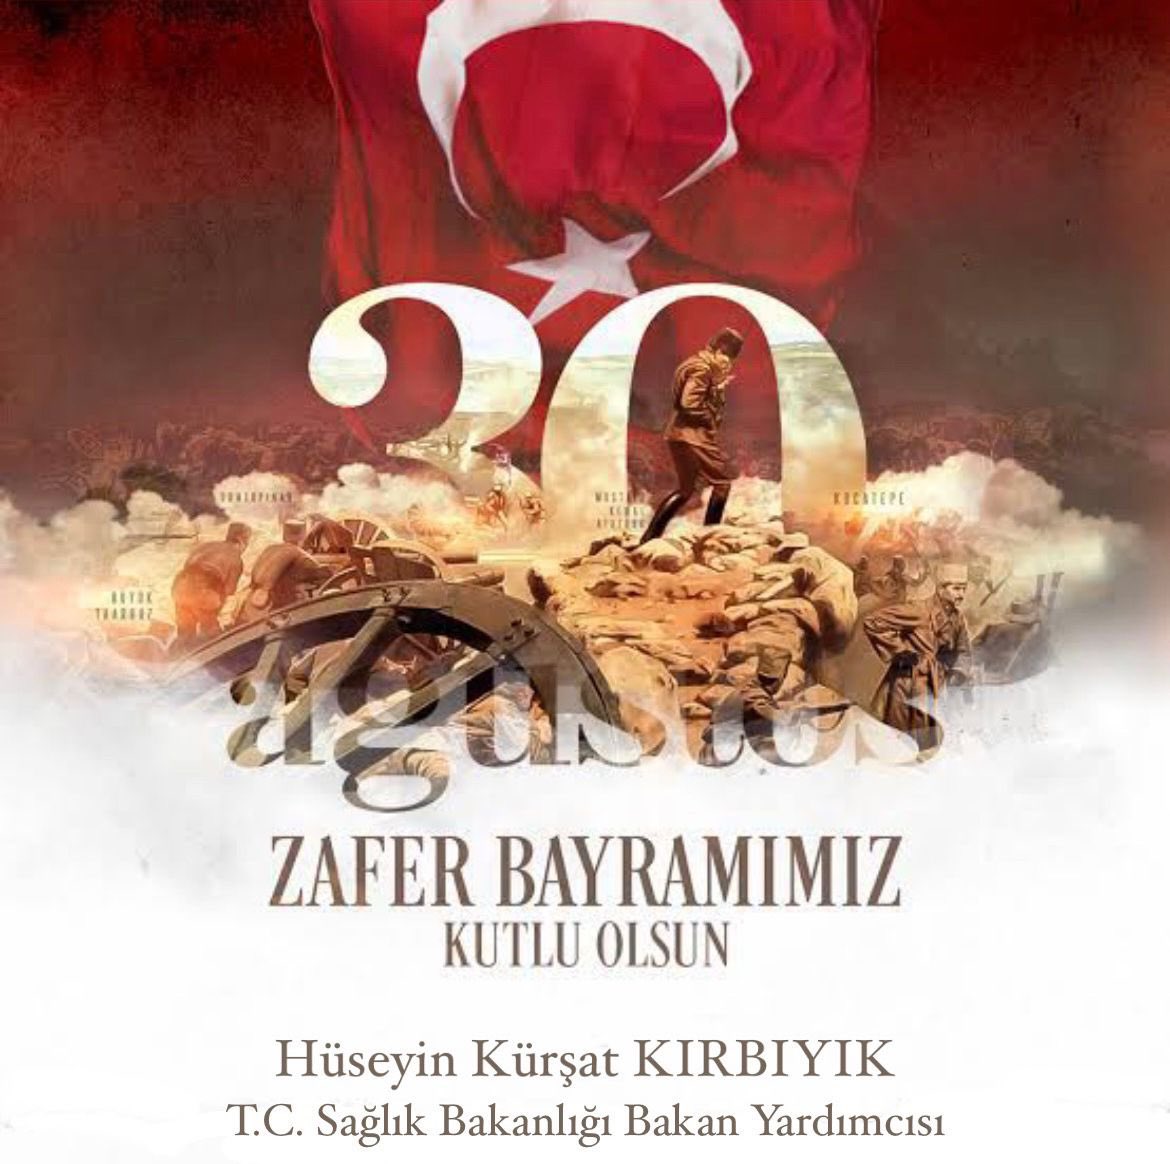 30 Ağustos Zaferi, tarihi kahramanlıklarla örülü Türk Milletinin iftihar abidesidir. Başta Gazi Mustafa Kemal Atatürk ve silah arkadaşları olmak üzere tüm kahramanlarımızı rahmet ve minnetle anıyorum.